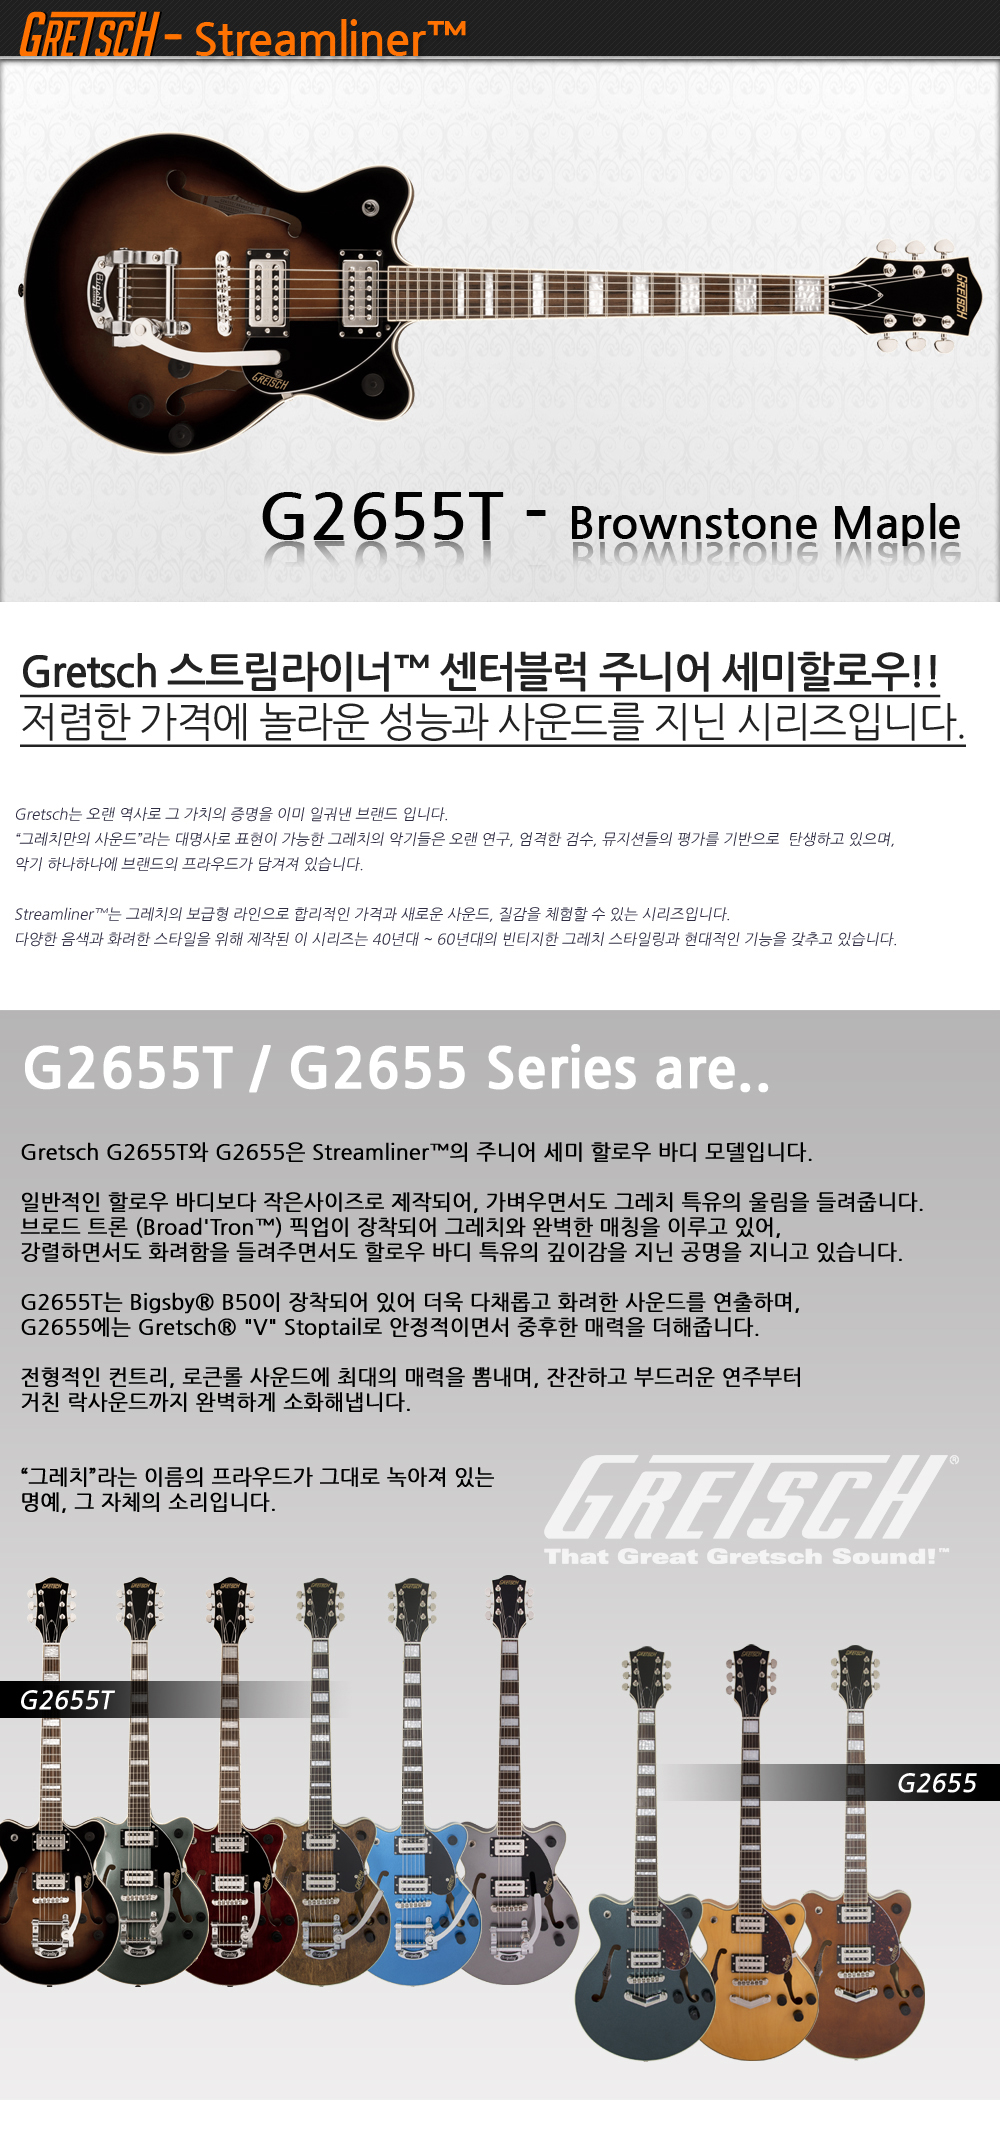 Gretsch-G2655T-BrownstoneMaple_1_175718.jpg